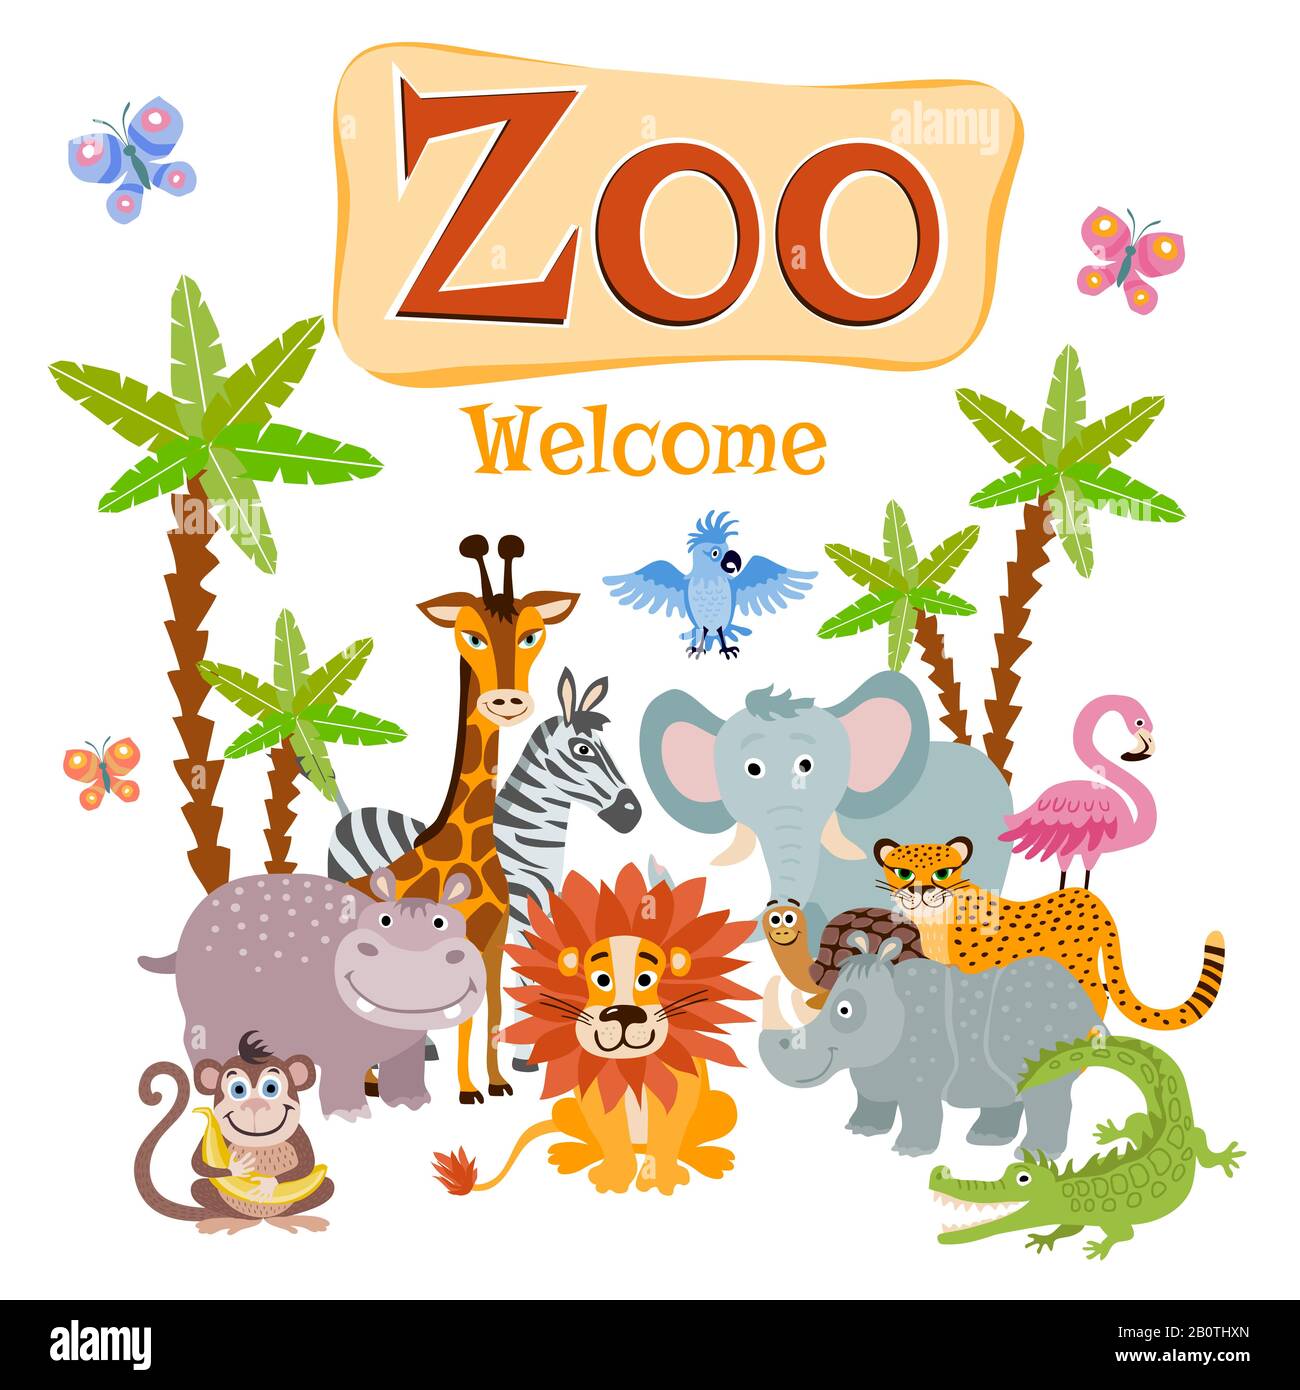 Zoo vector ilustración con animales salvajes de safari de dibujos animados. Banner de bienvenida zoológico, animales animales de fauna rhinoceros y flamingo Ilustración del Vector